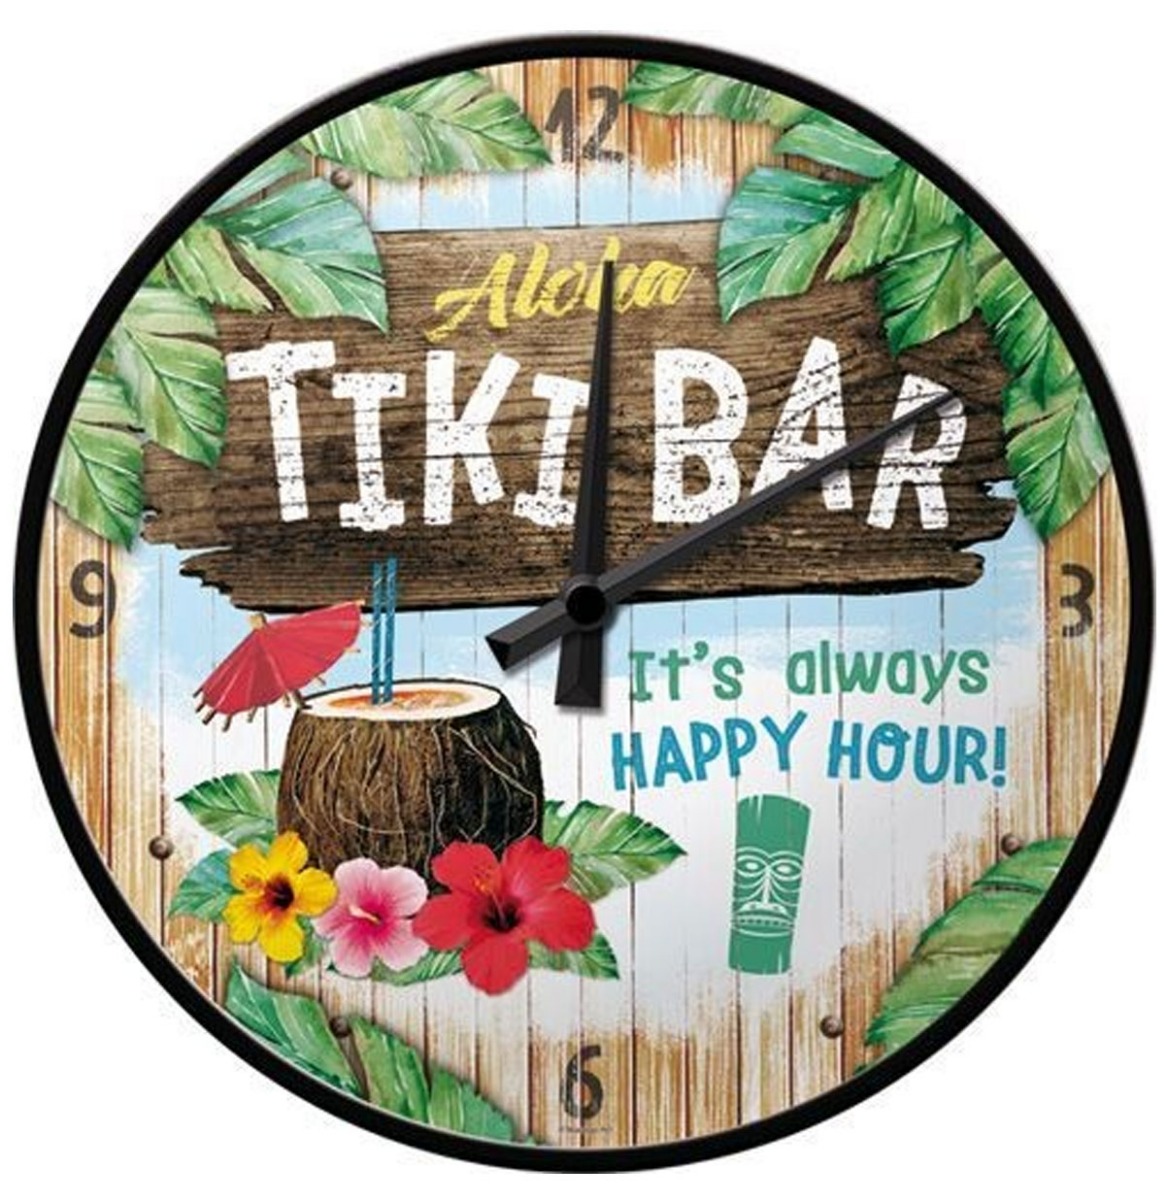 Wandklok Aloha Tiki Bar